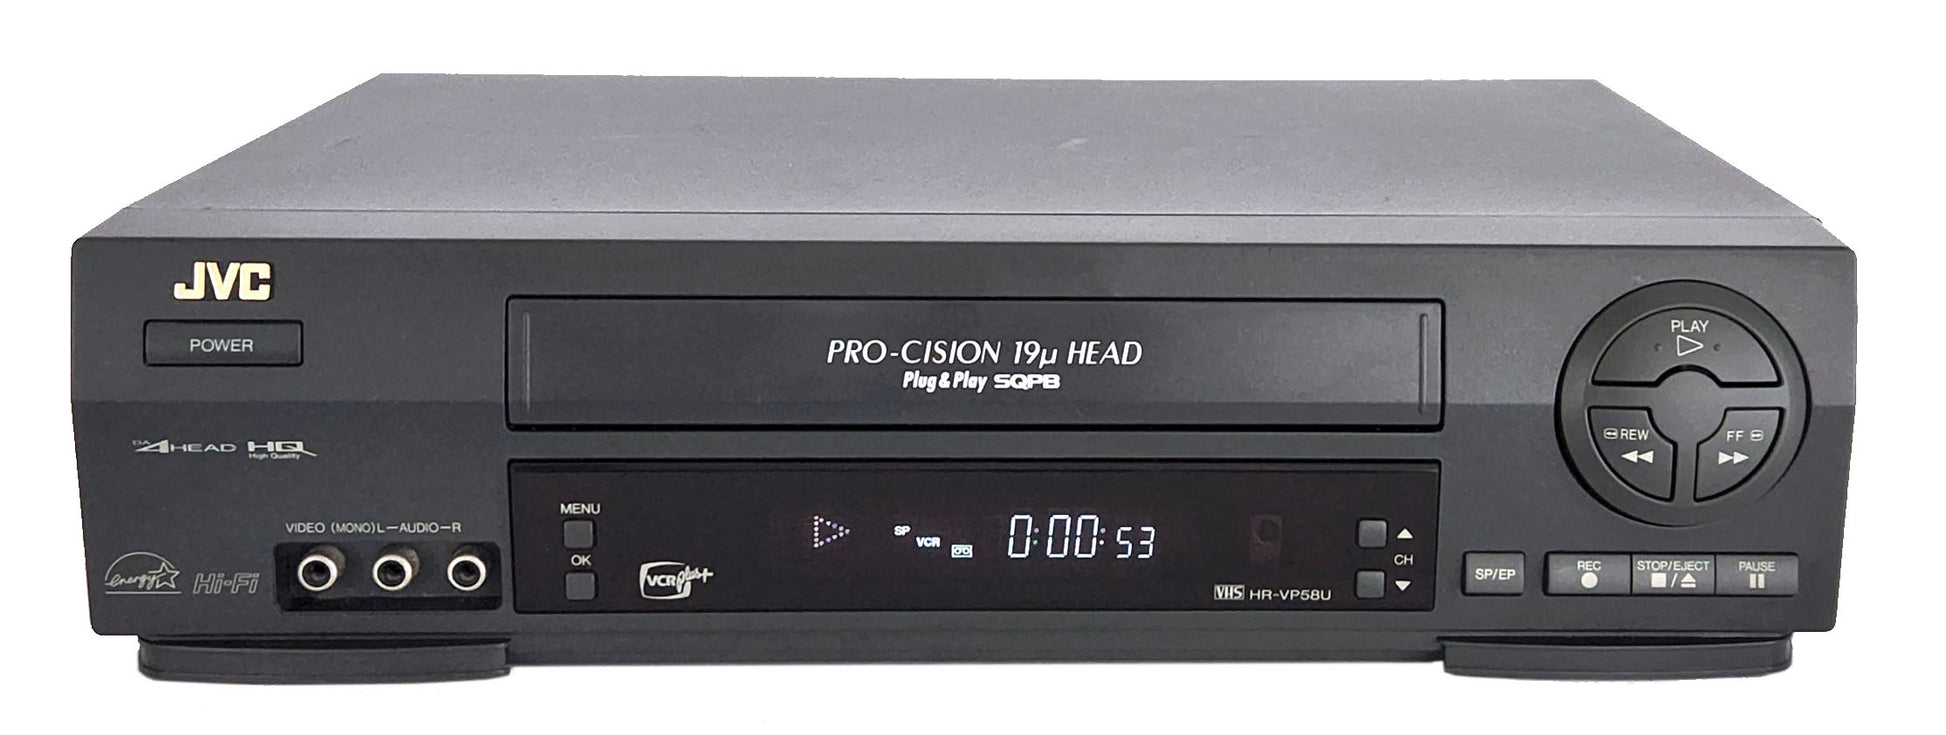 JVC HR-VP58U VCR, 4-Head Hi-Fi Stereo VHS Player - Front